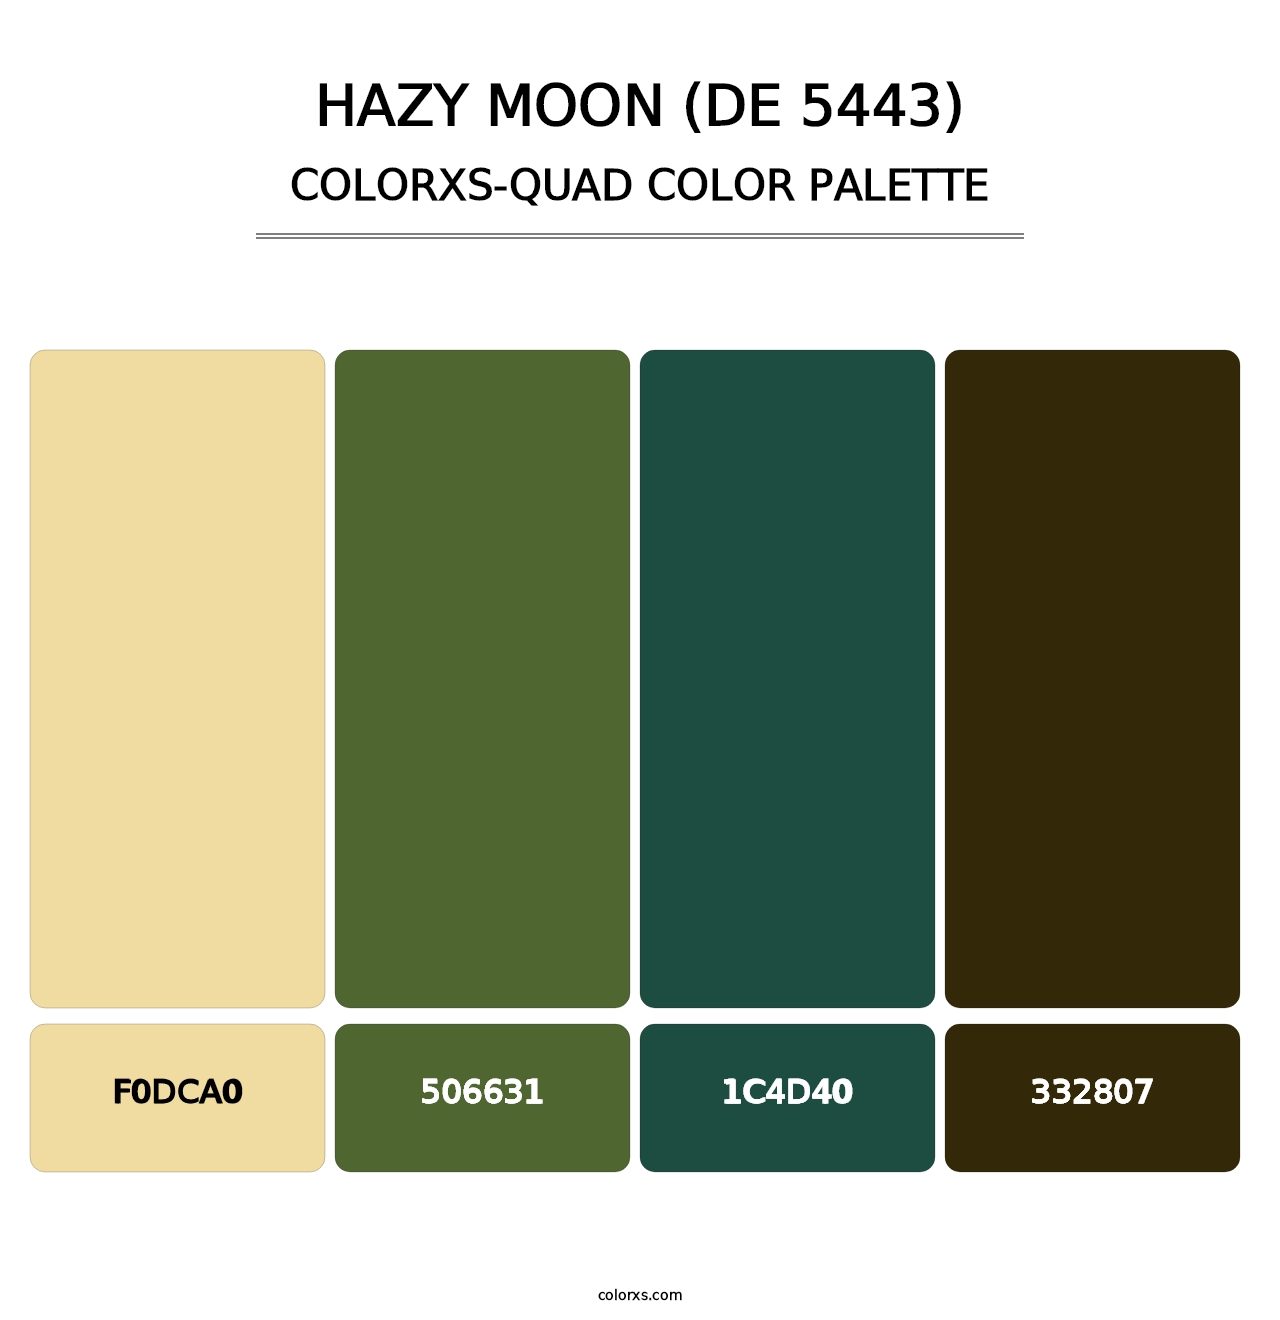 Hazy Moon (DE 5443) - Colorxs Quad Palette